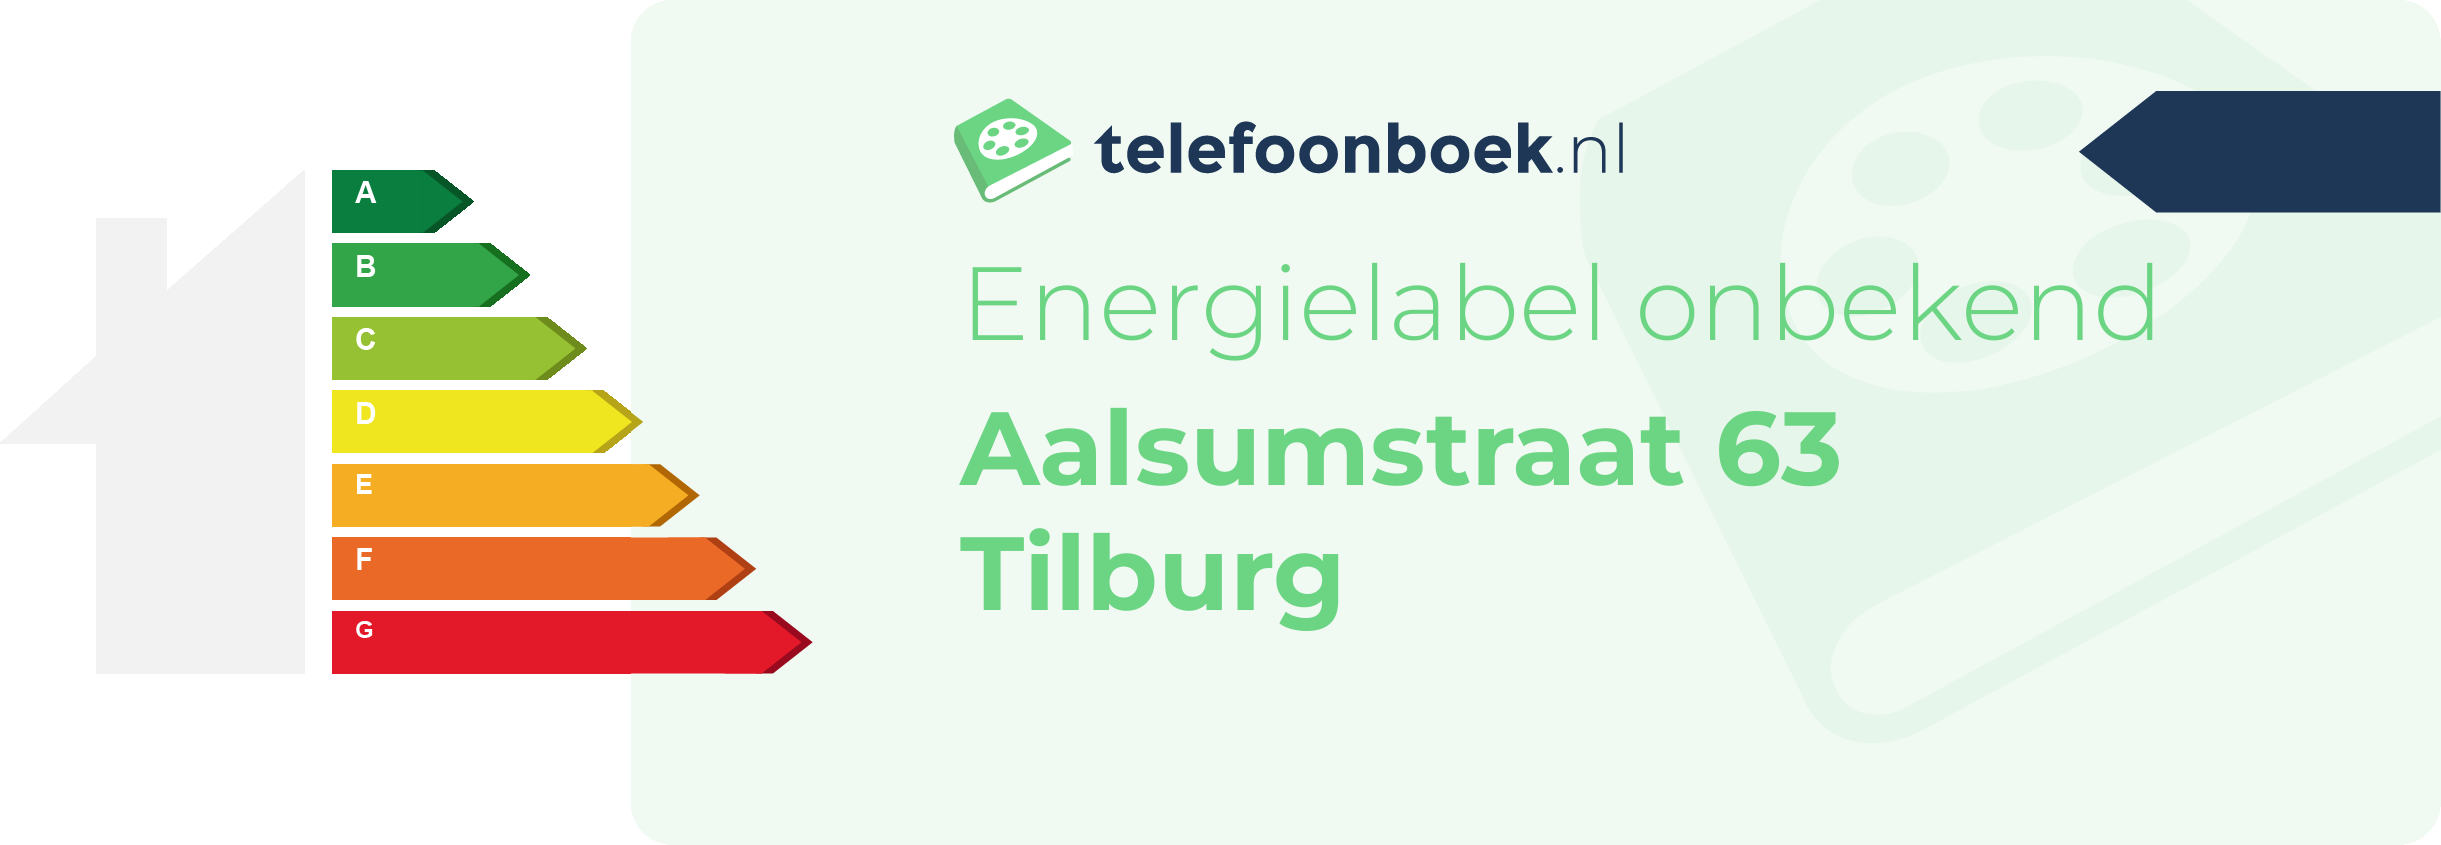 Energielabel Aalsumstraat 63 Tilburg